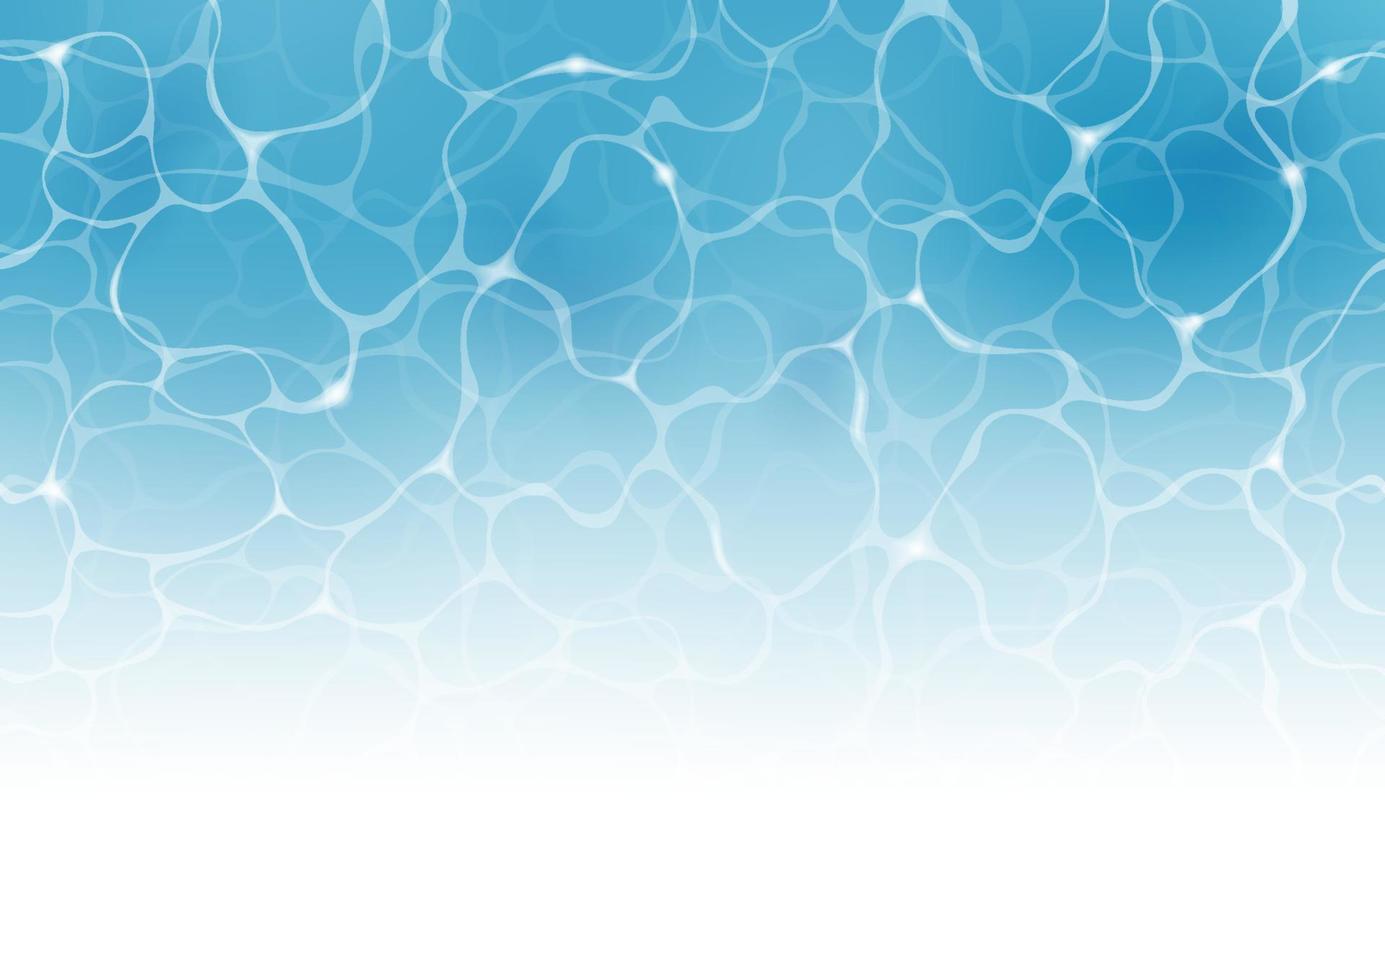 Vektor nahtlos wellig Schwimmen Schwimmbad abstrakt Hintergrund Illustration. horizontal wiederholbar.